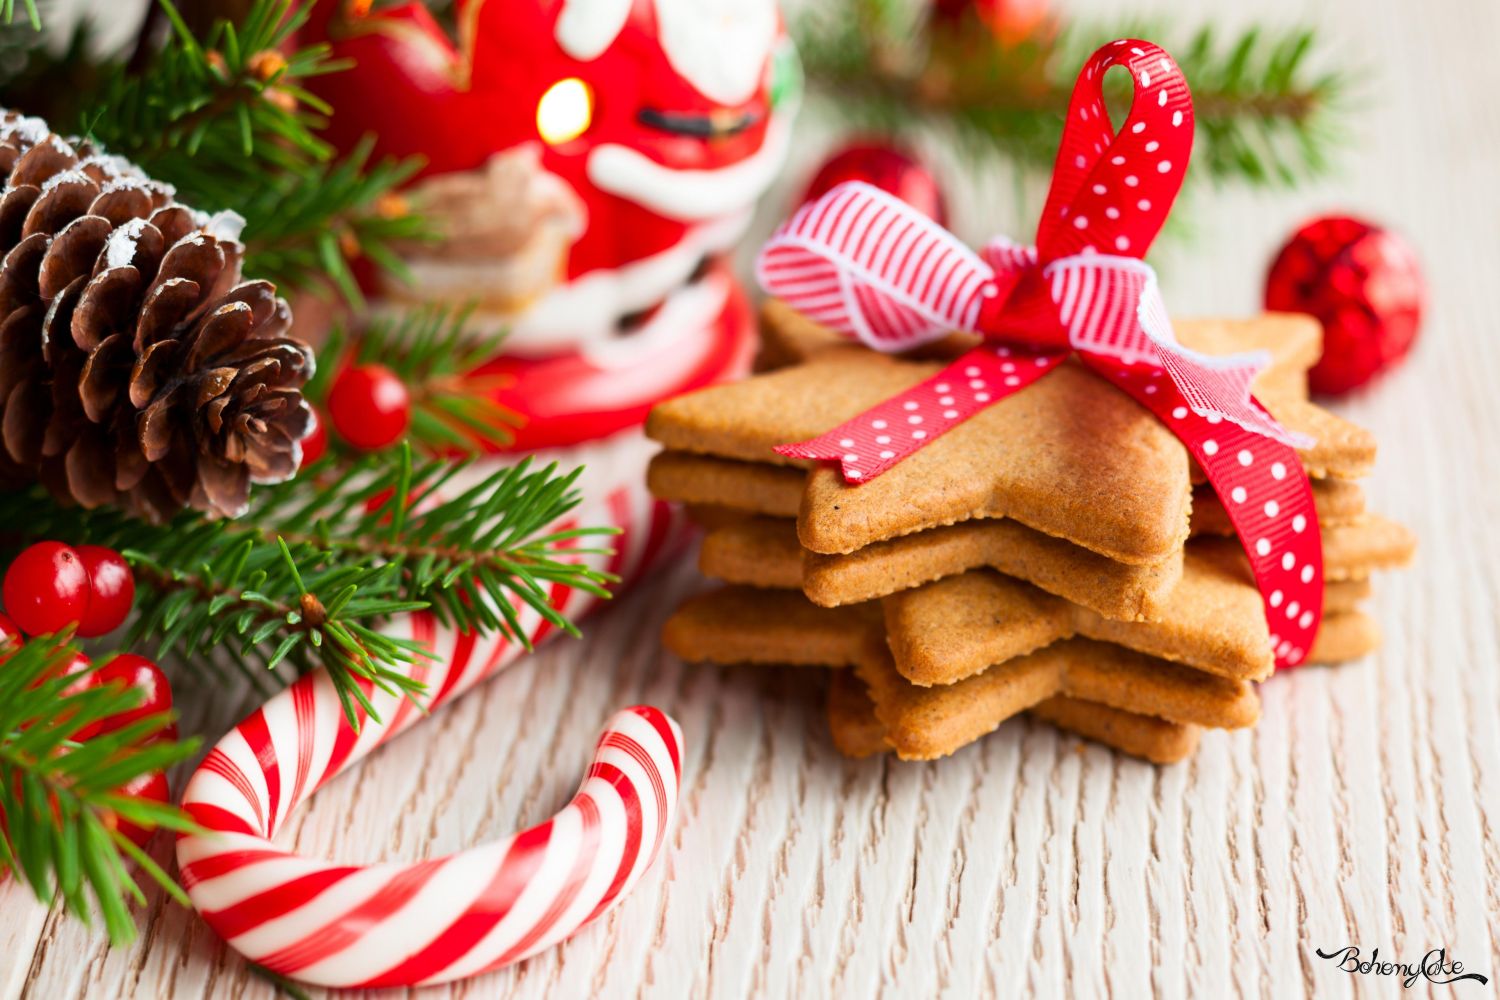 Dolci Di Natale Da Regalare.Le Migliori Ricette Di Biscotti Da Regalare A Natale Bohemycake